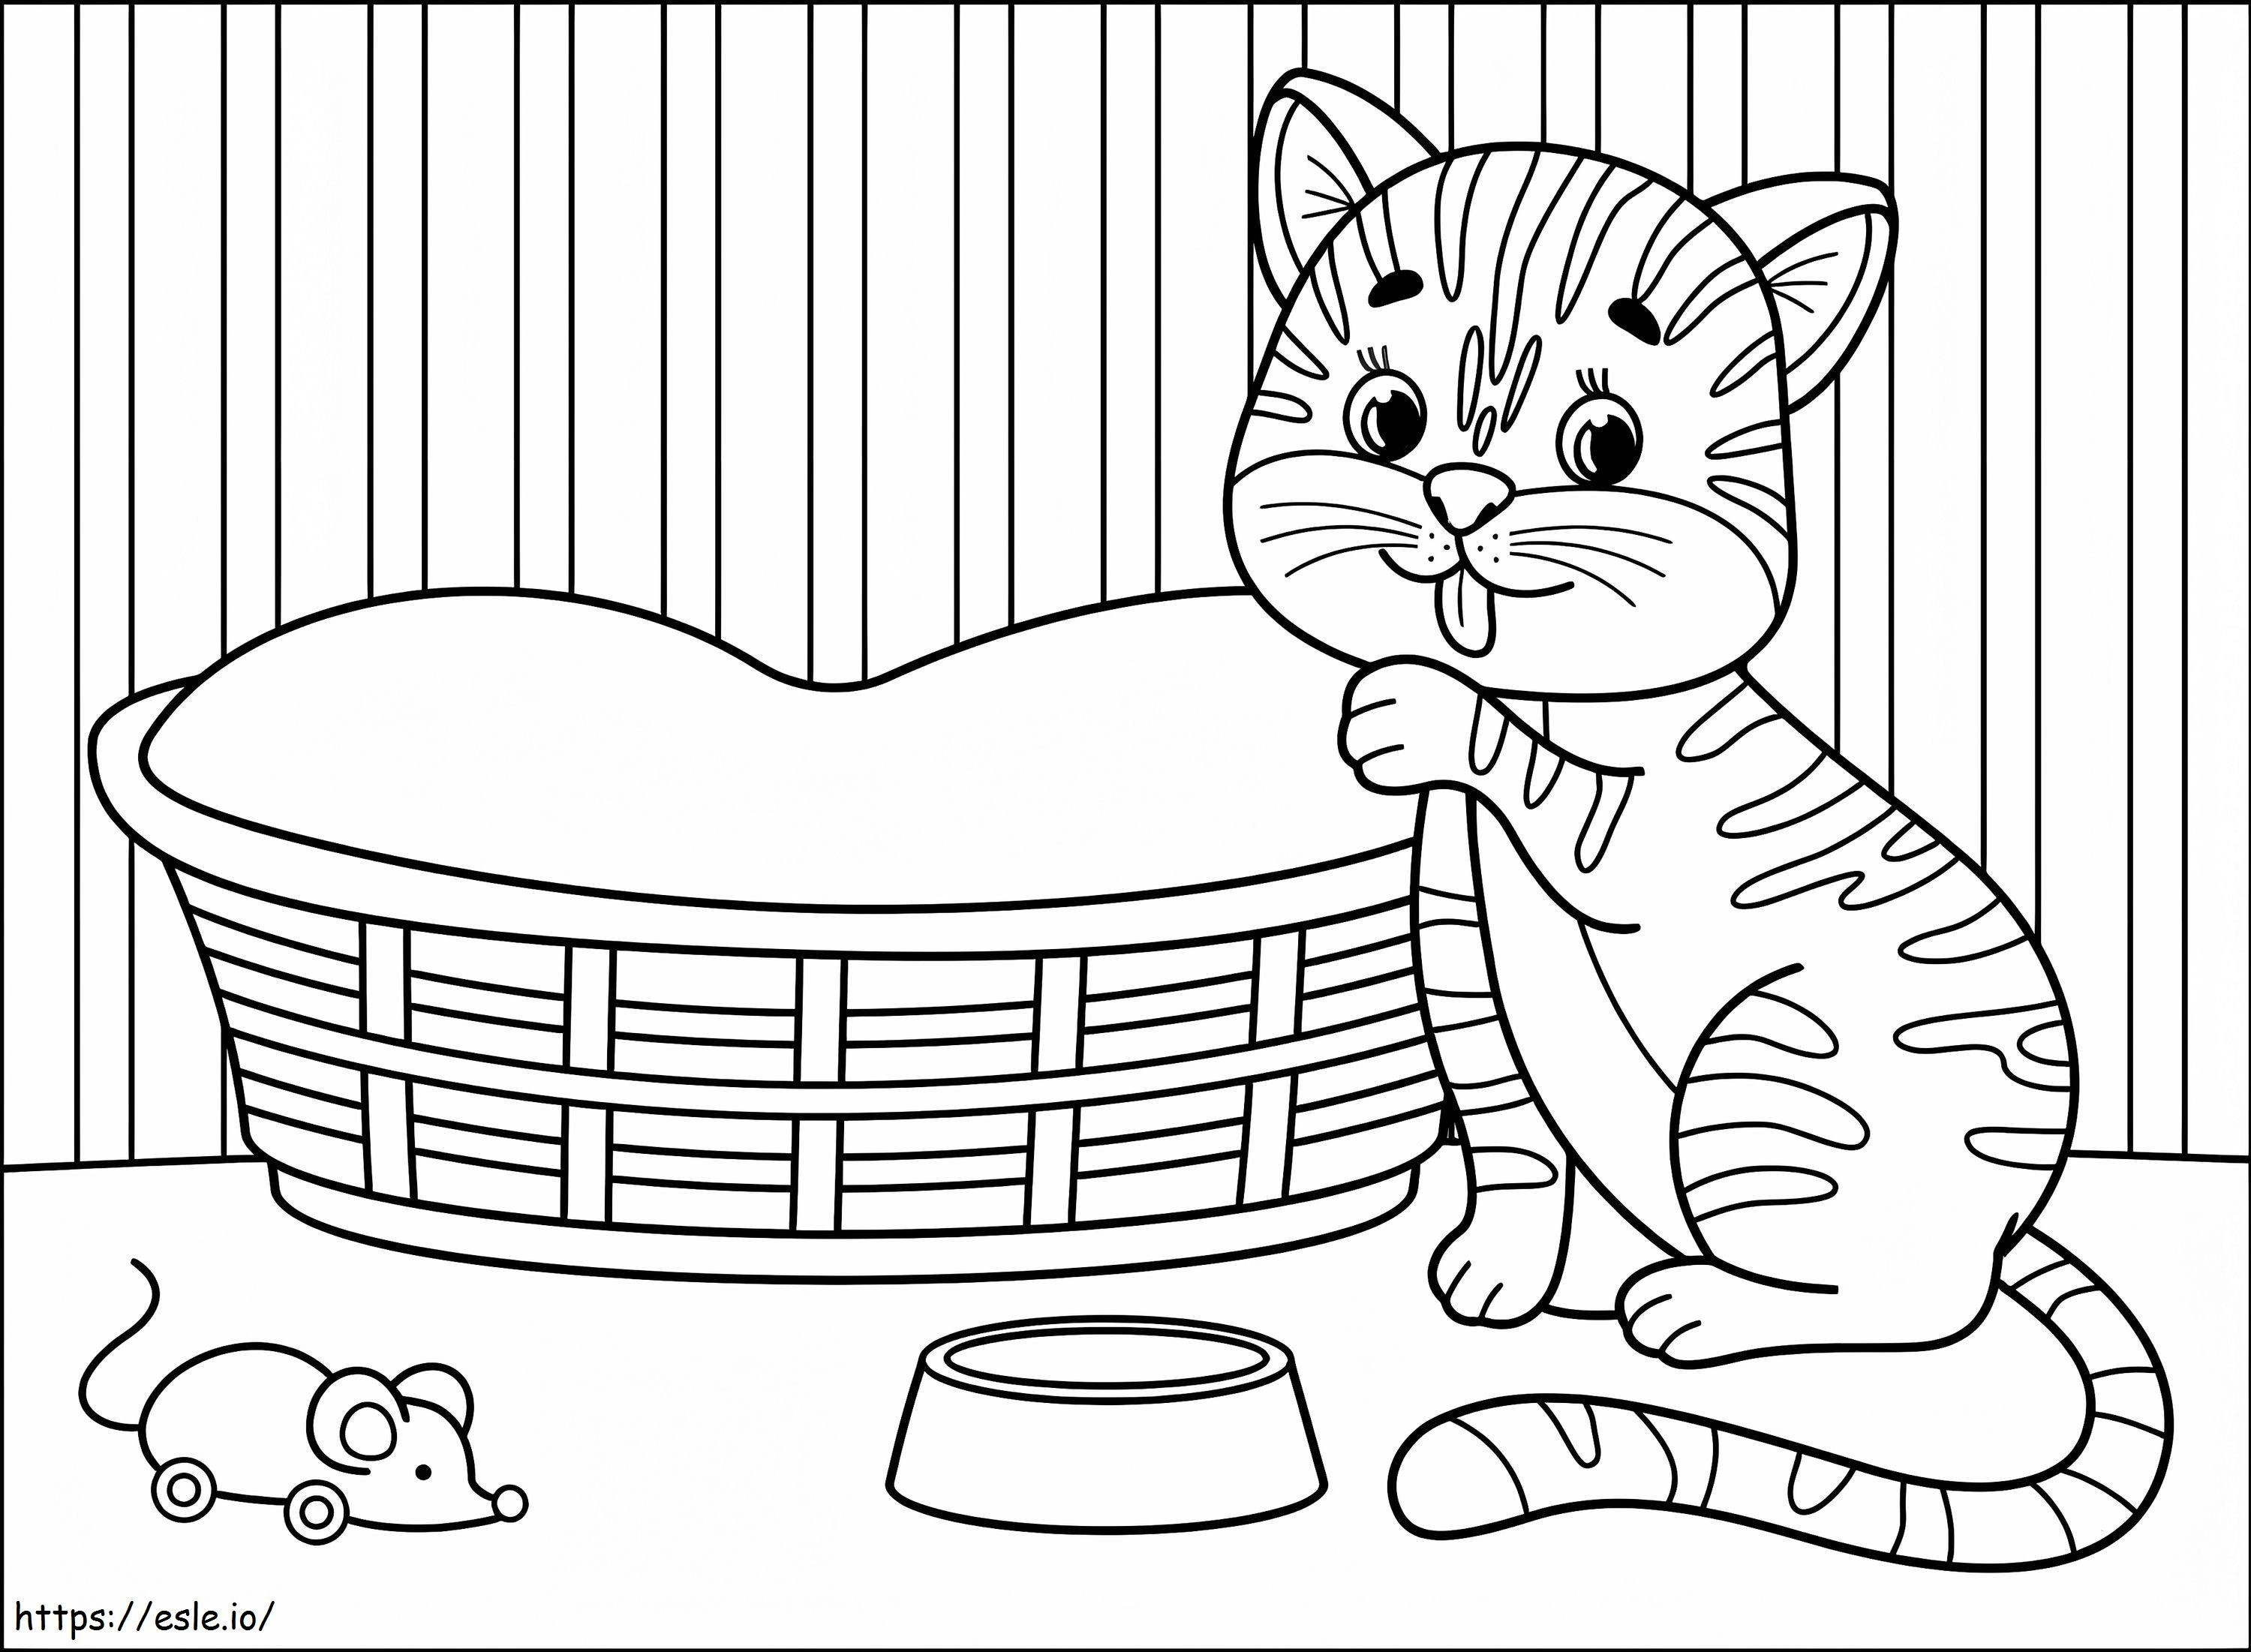 Gato de desenho animado para impressão para colorir